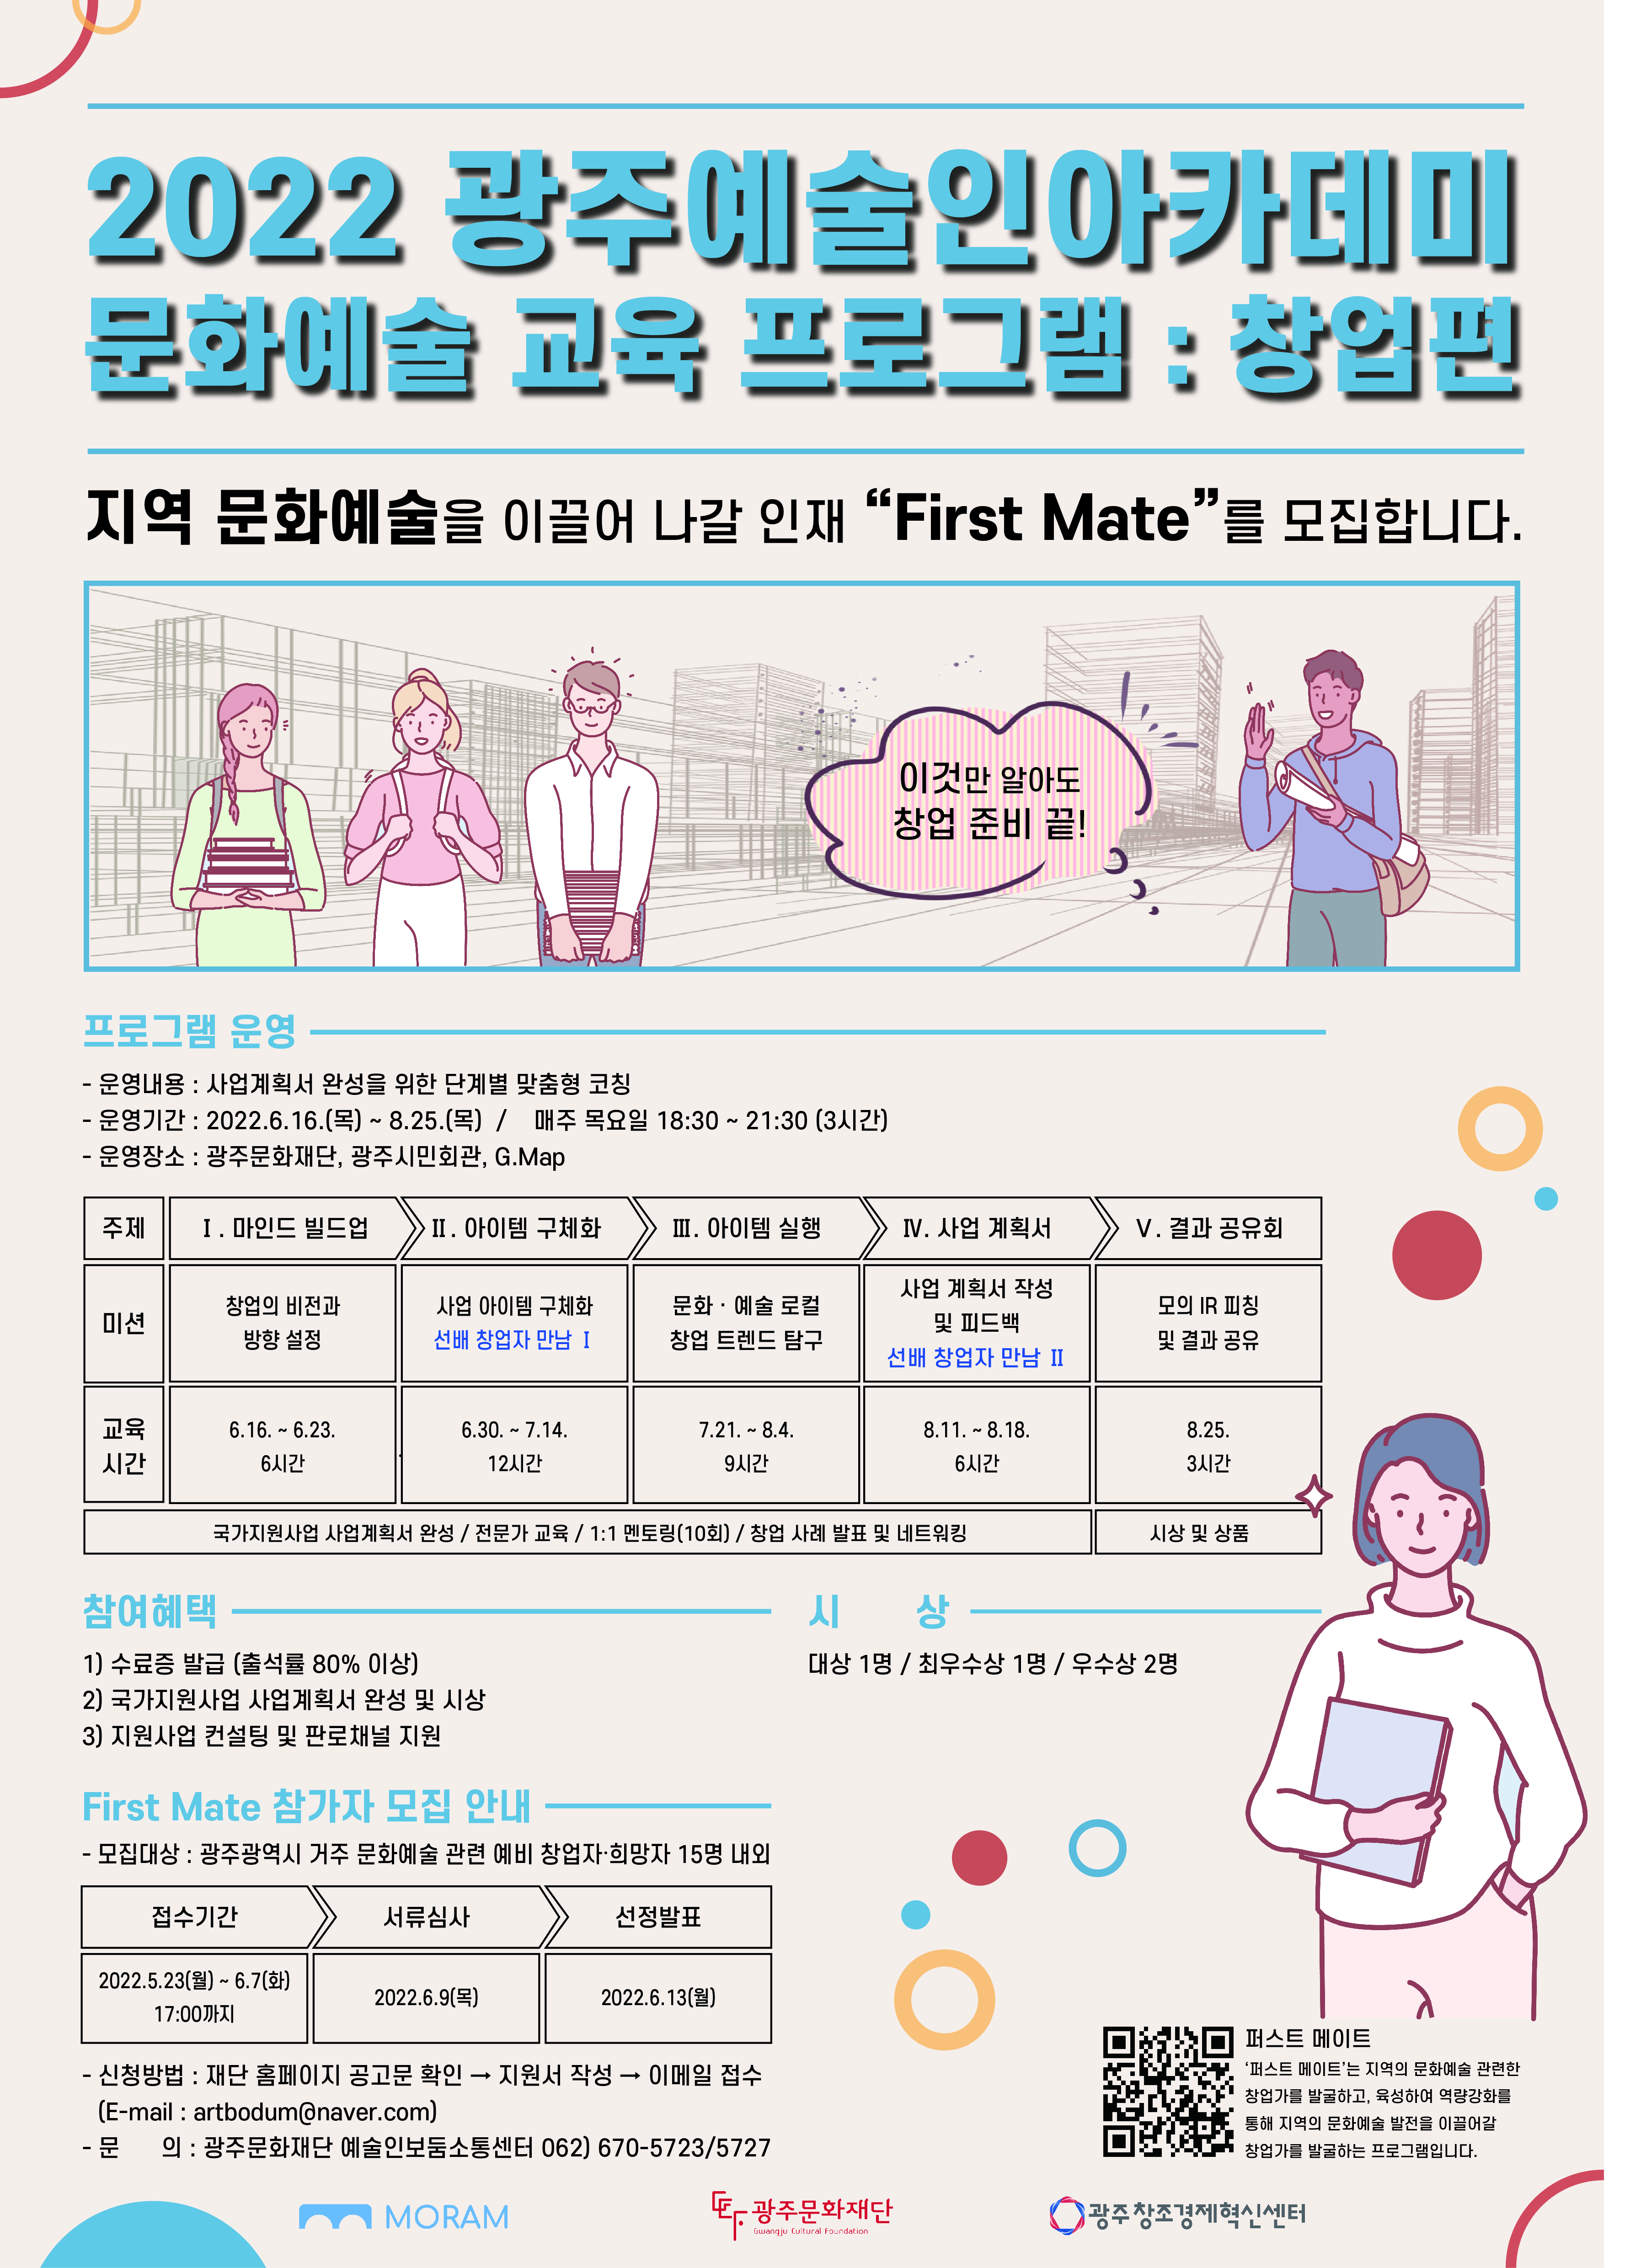 2022_광주예술인아카데미 창업편_모집 공고 포스터.jpg